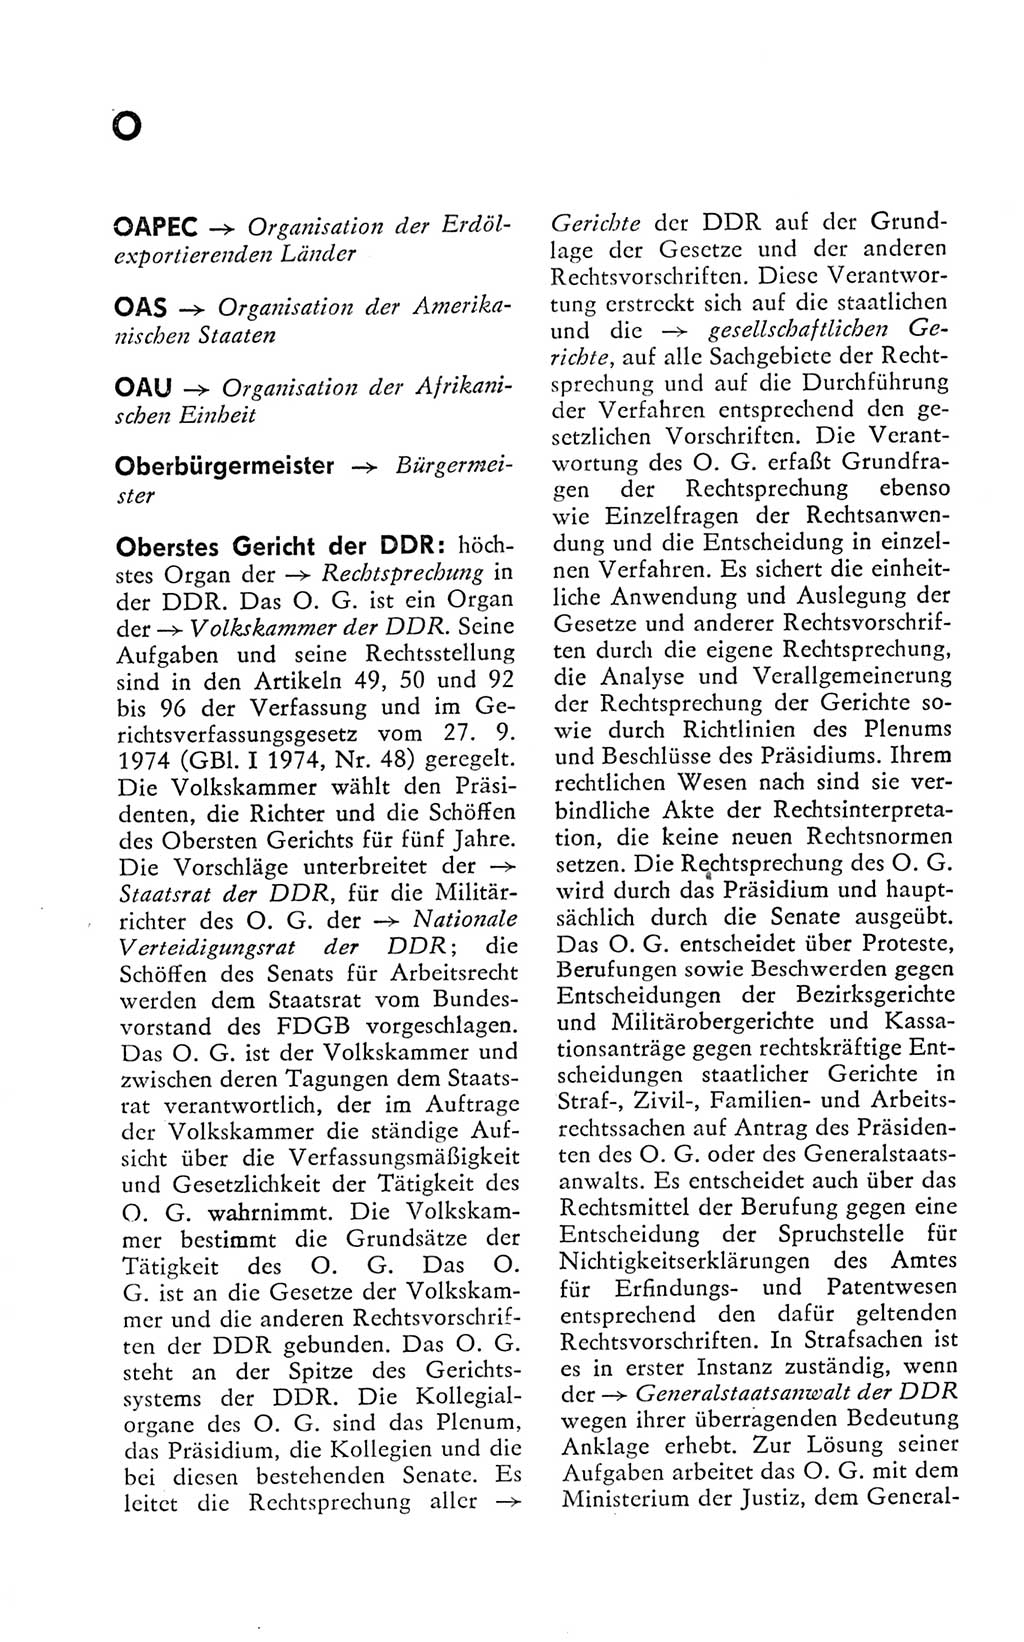 Kleines politisches Wörterbuch [Deutsche Demokratische Republik (DDR)] 1978, Seite 640 (Kl. pol. Wb. DDR 1978, S. 640)